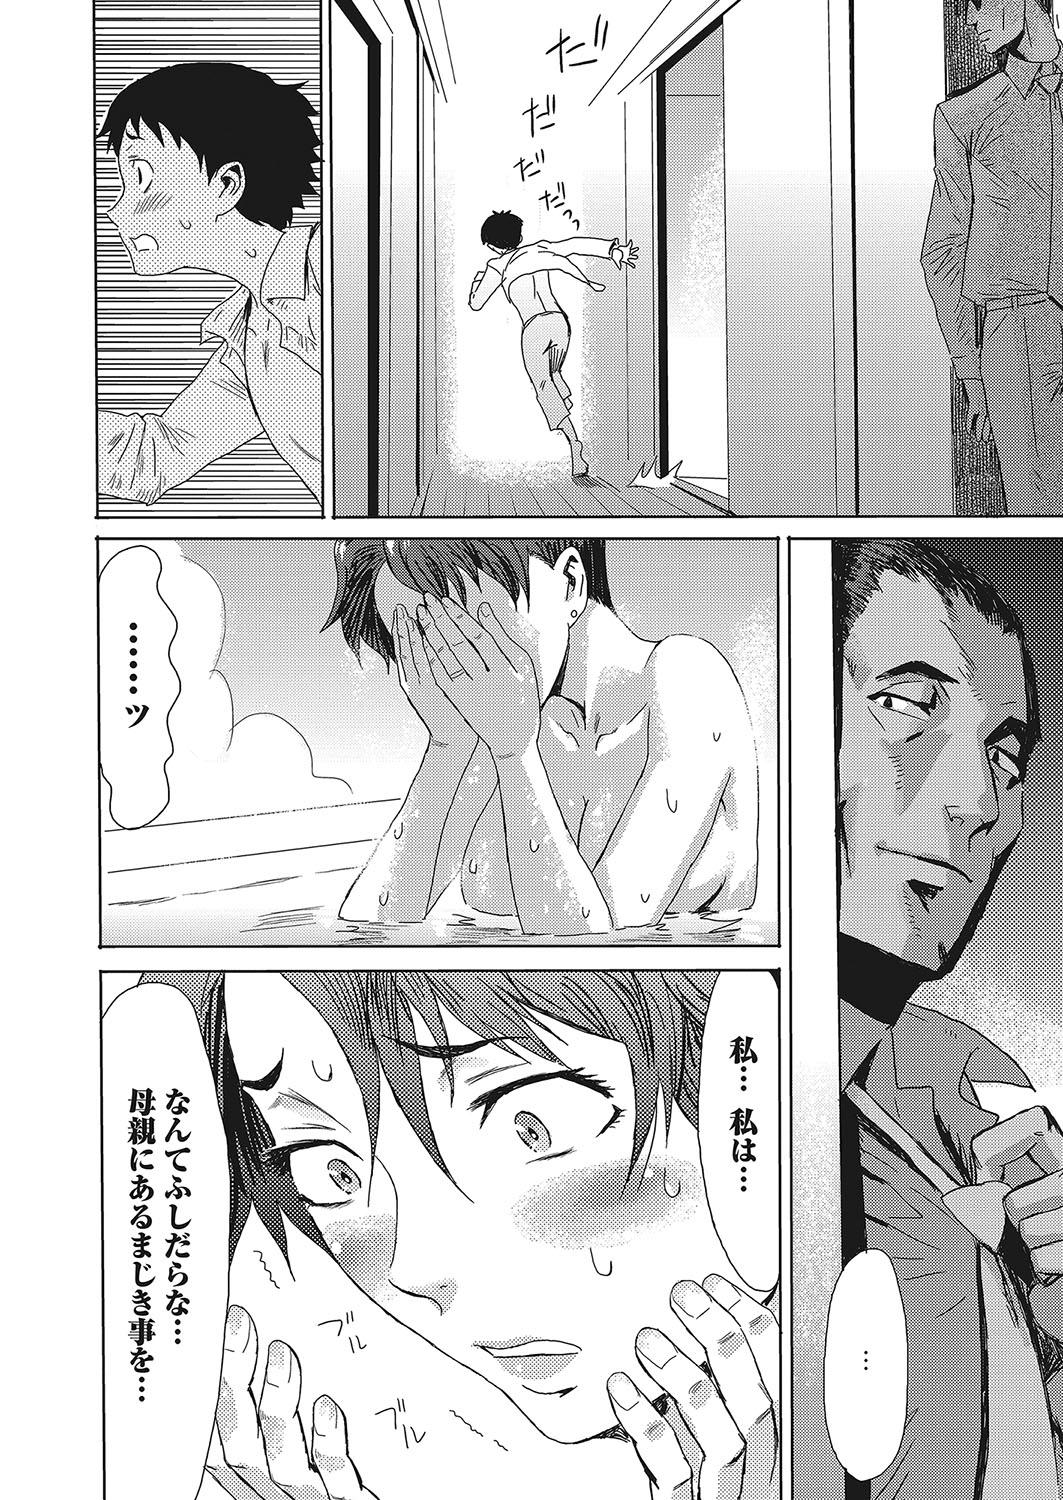 Jerking Web Manga Bangaichi Vol. 12 Linda - Page 9